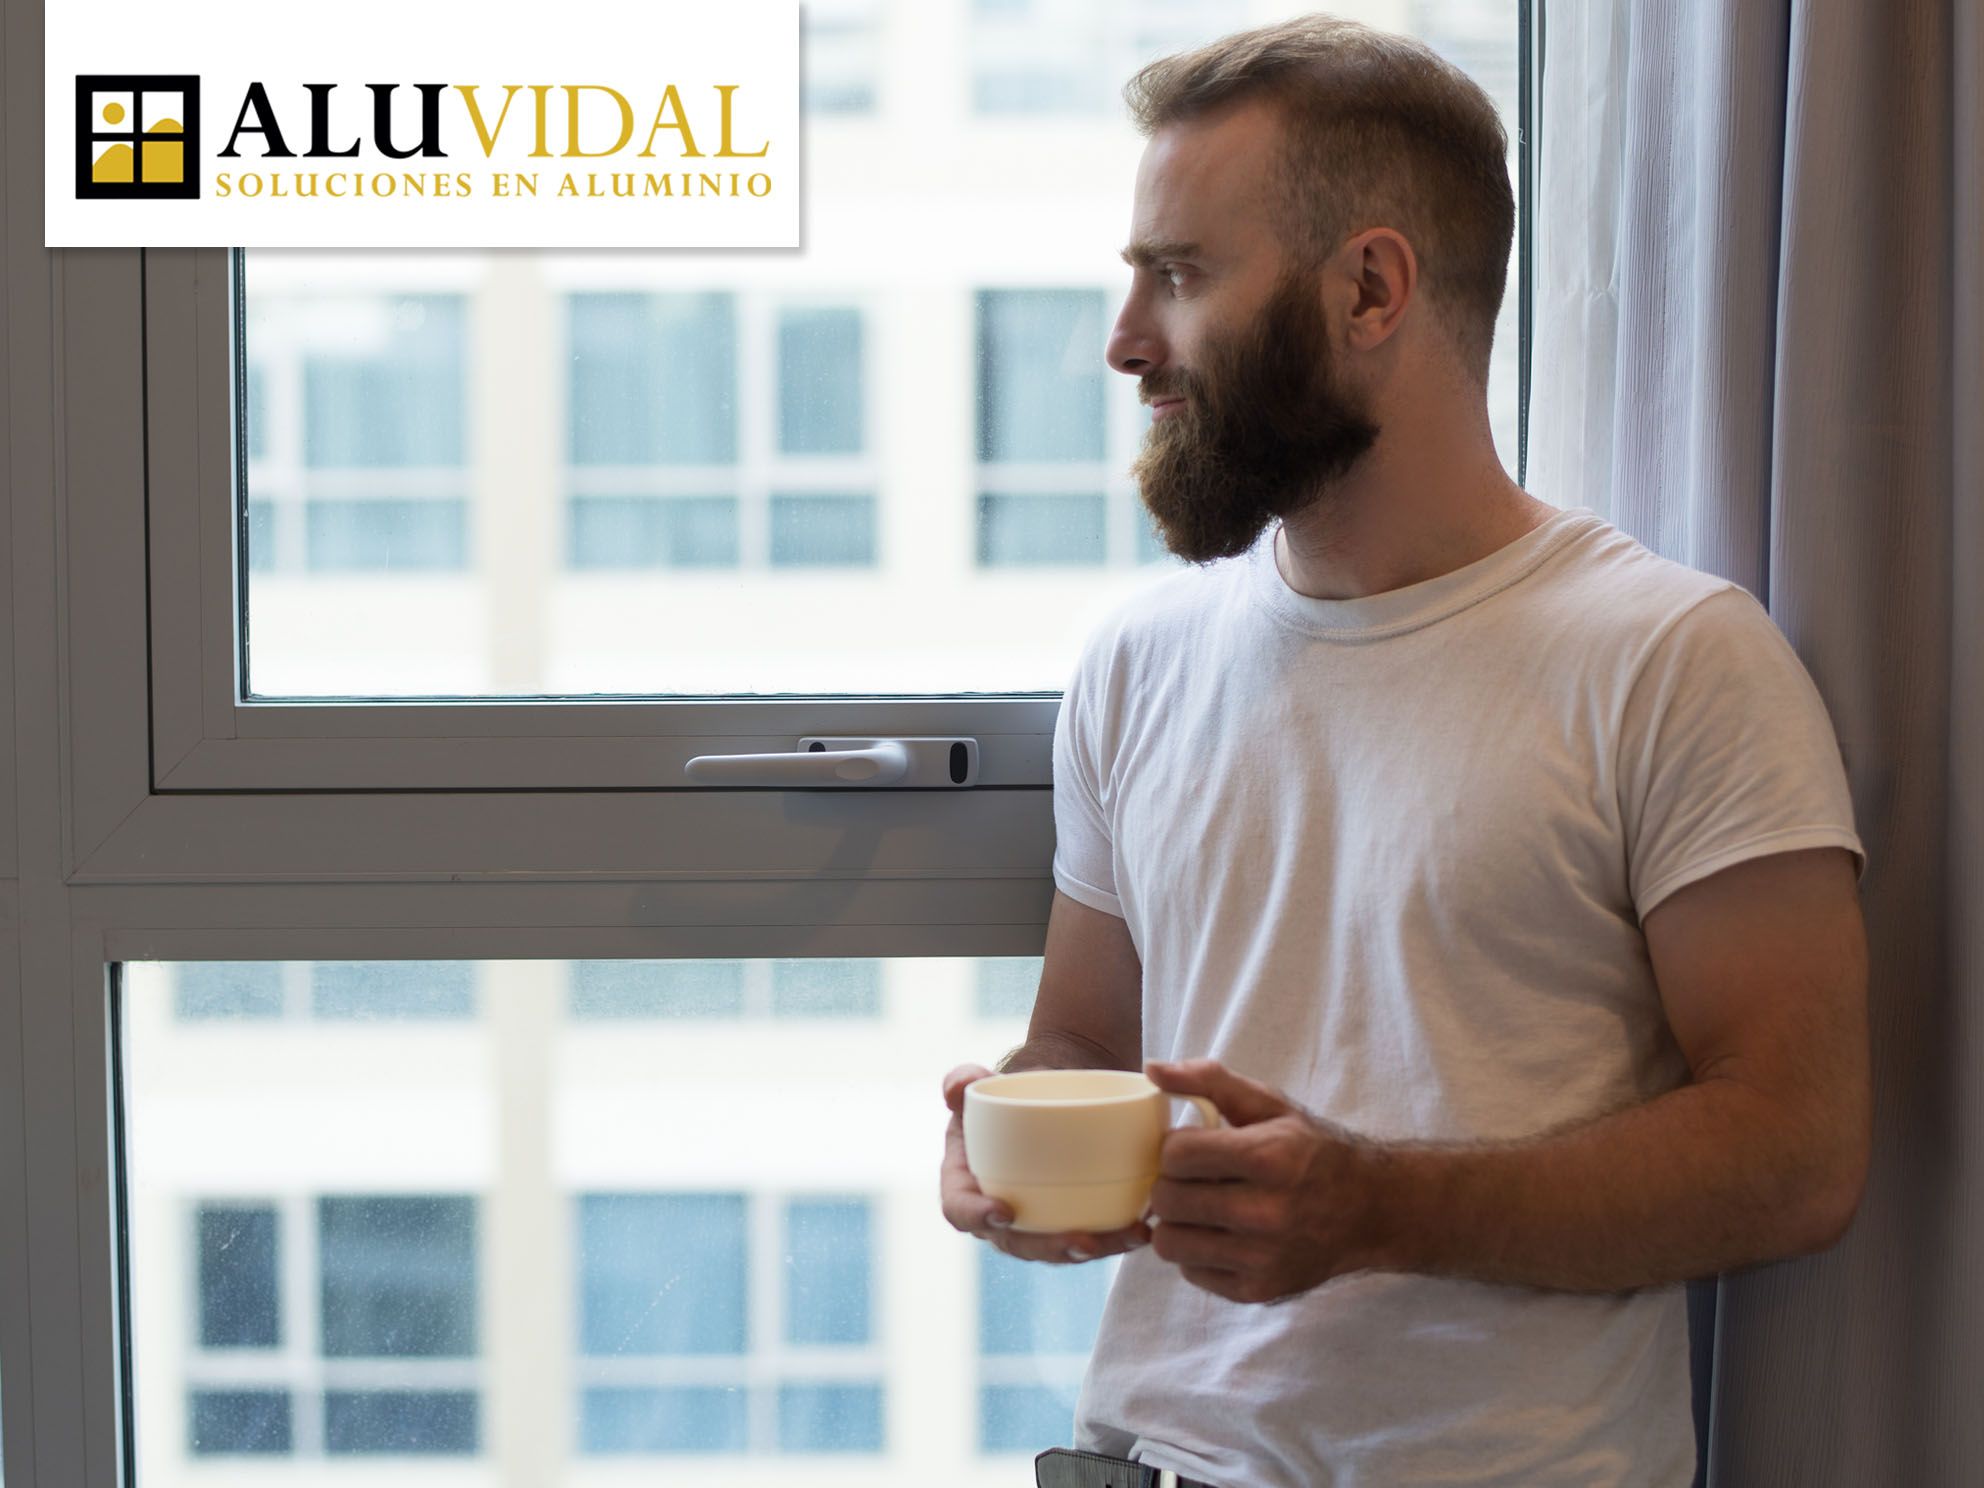 Aluvidal explica las ventajas de instalar ventanas de aluminio en los hogares